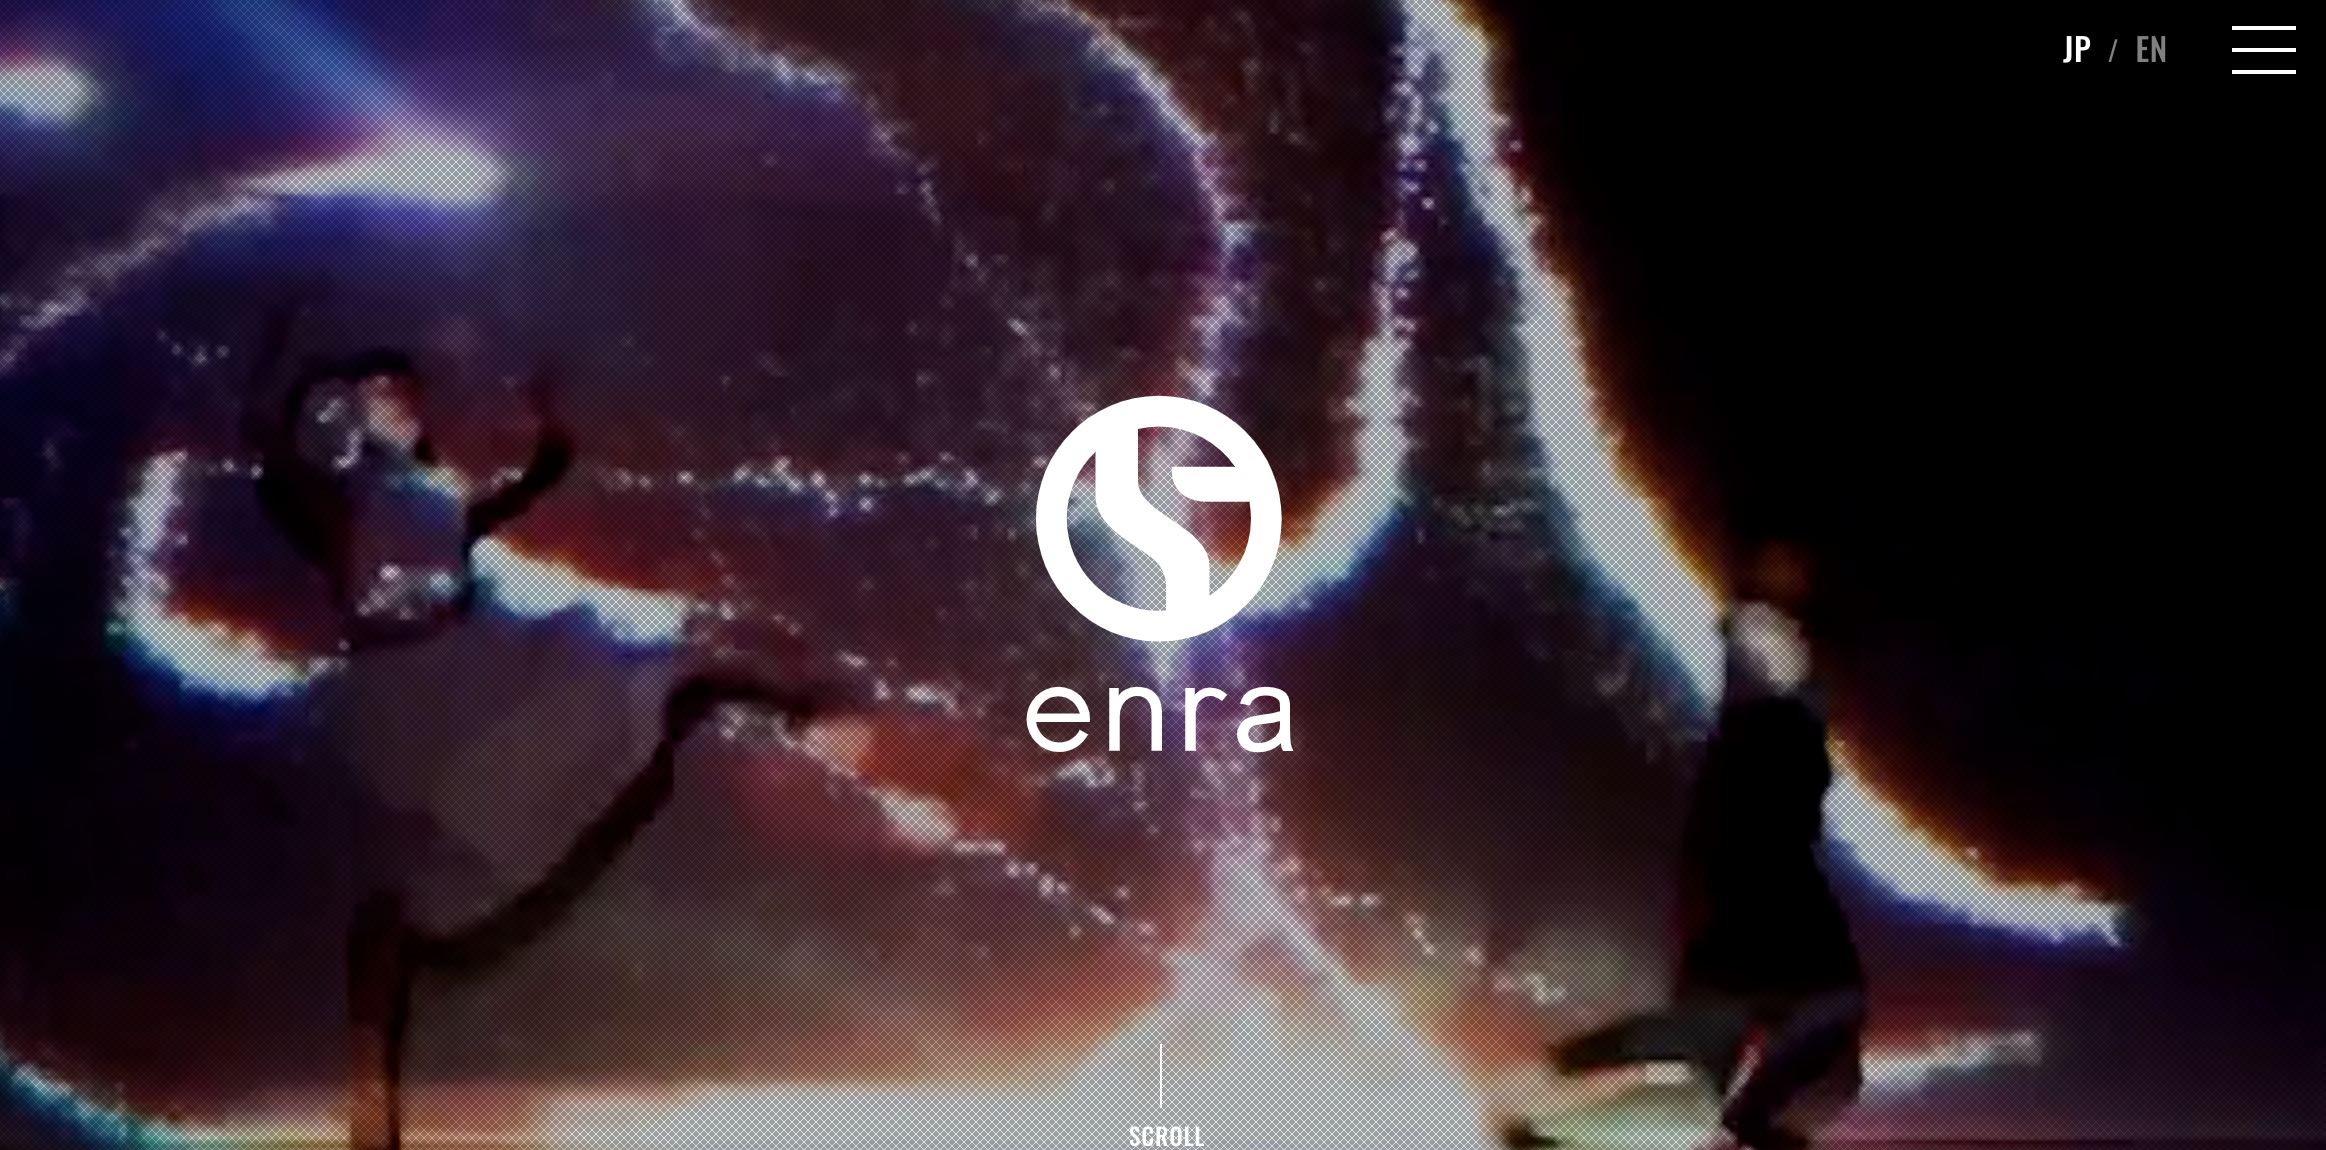 Erna website homepage